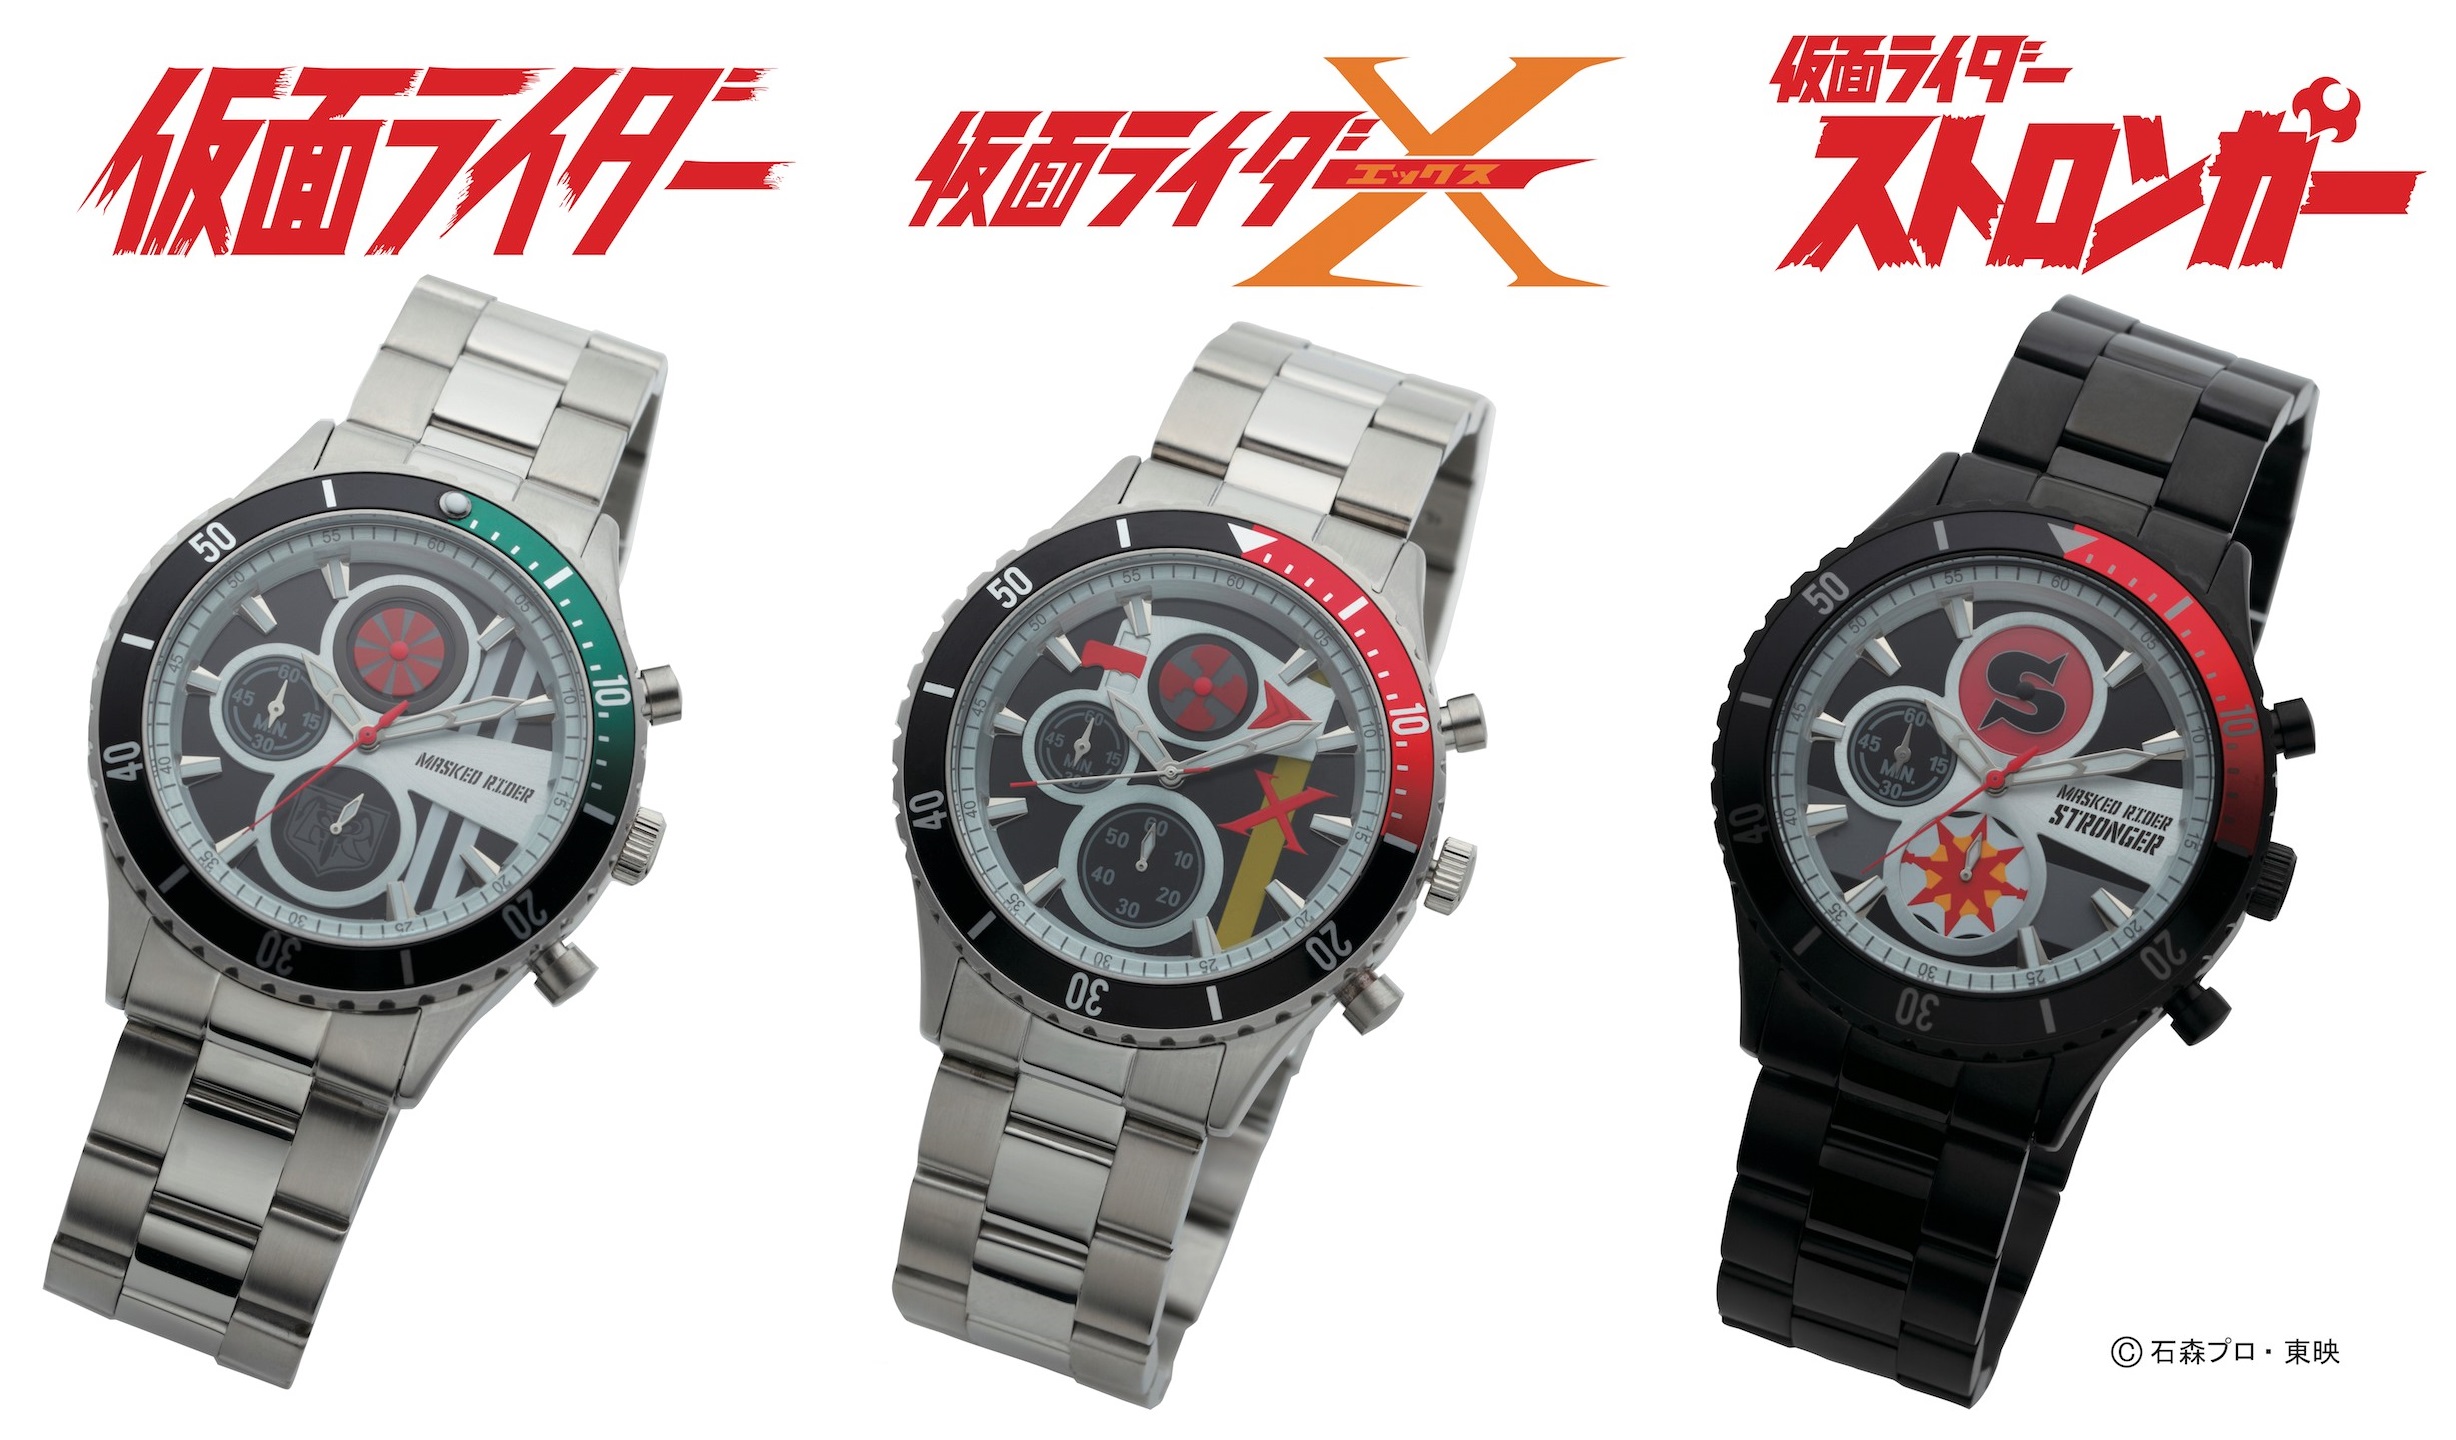 仮面ライダー X 腕時計 クロノグラフ Live Action Watch